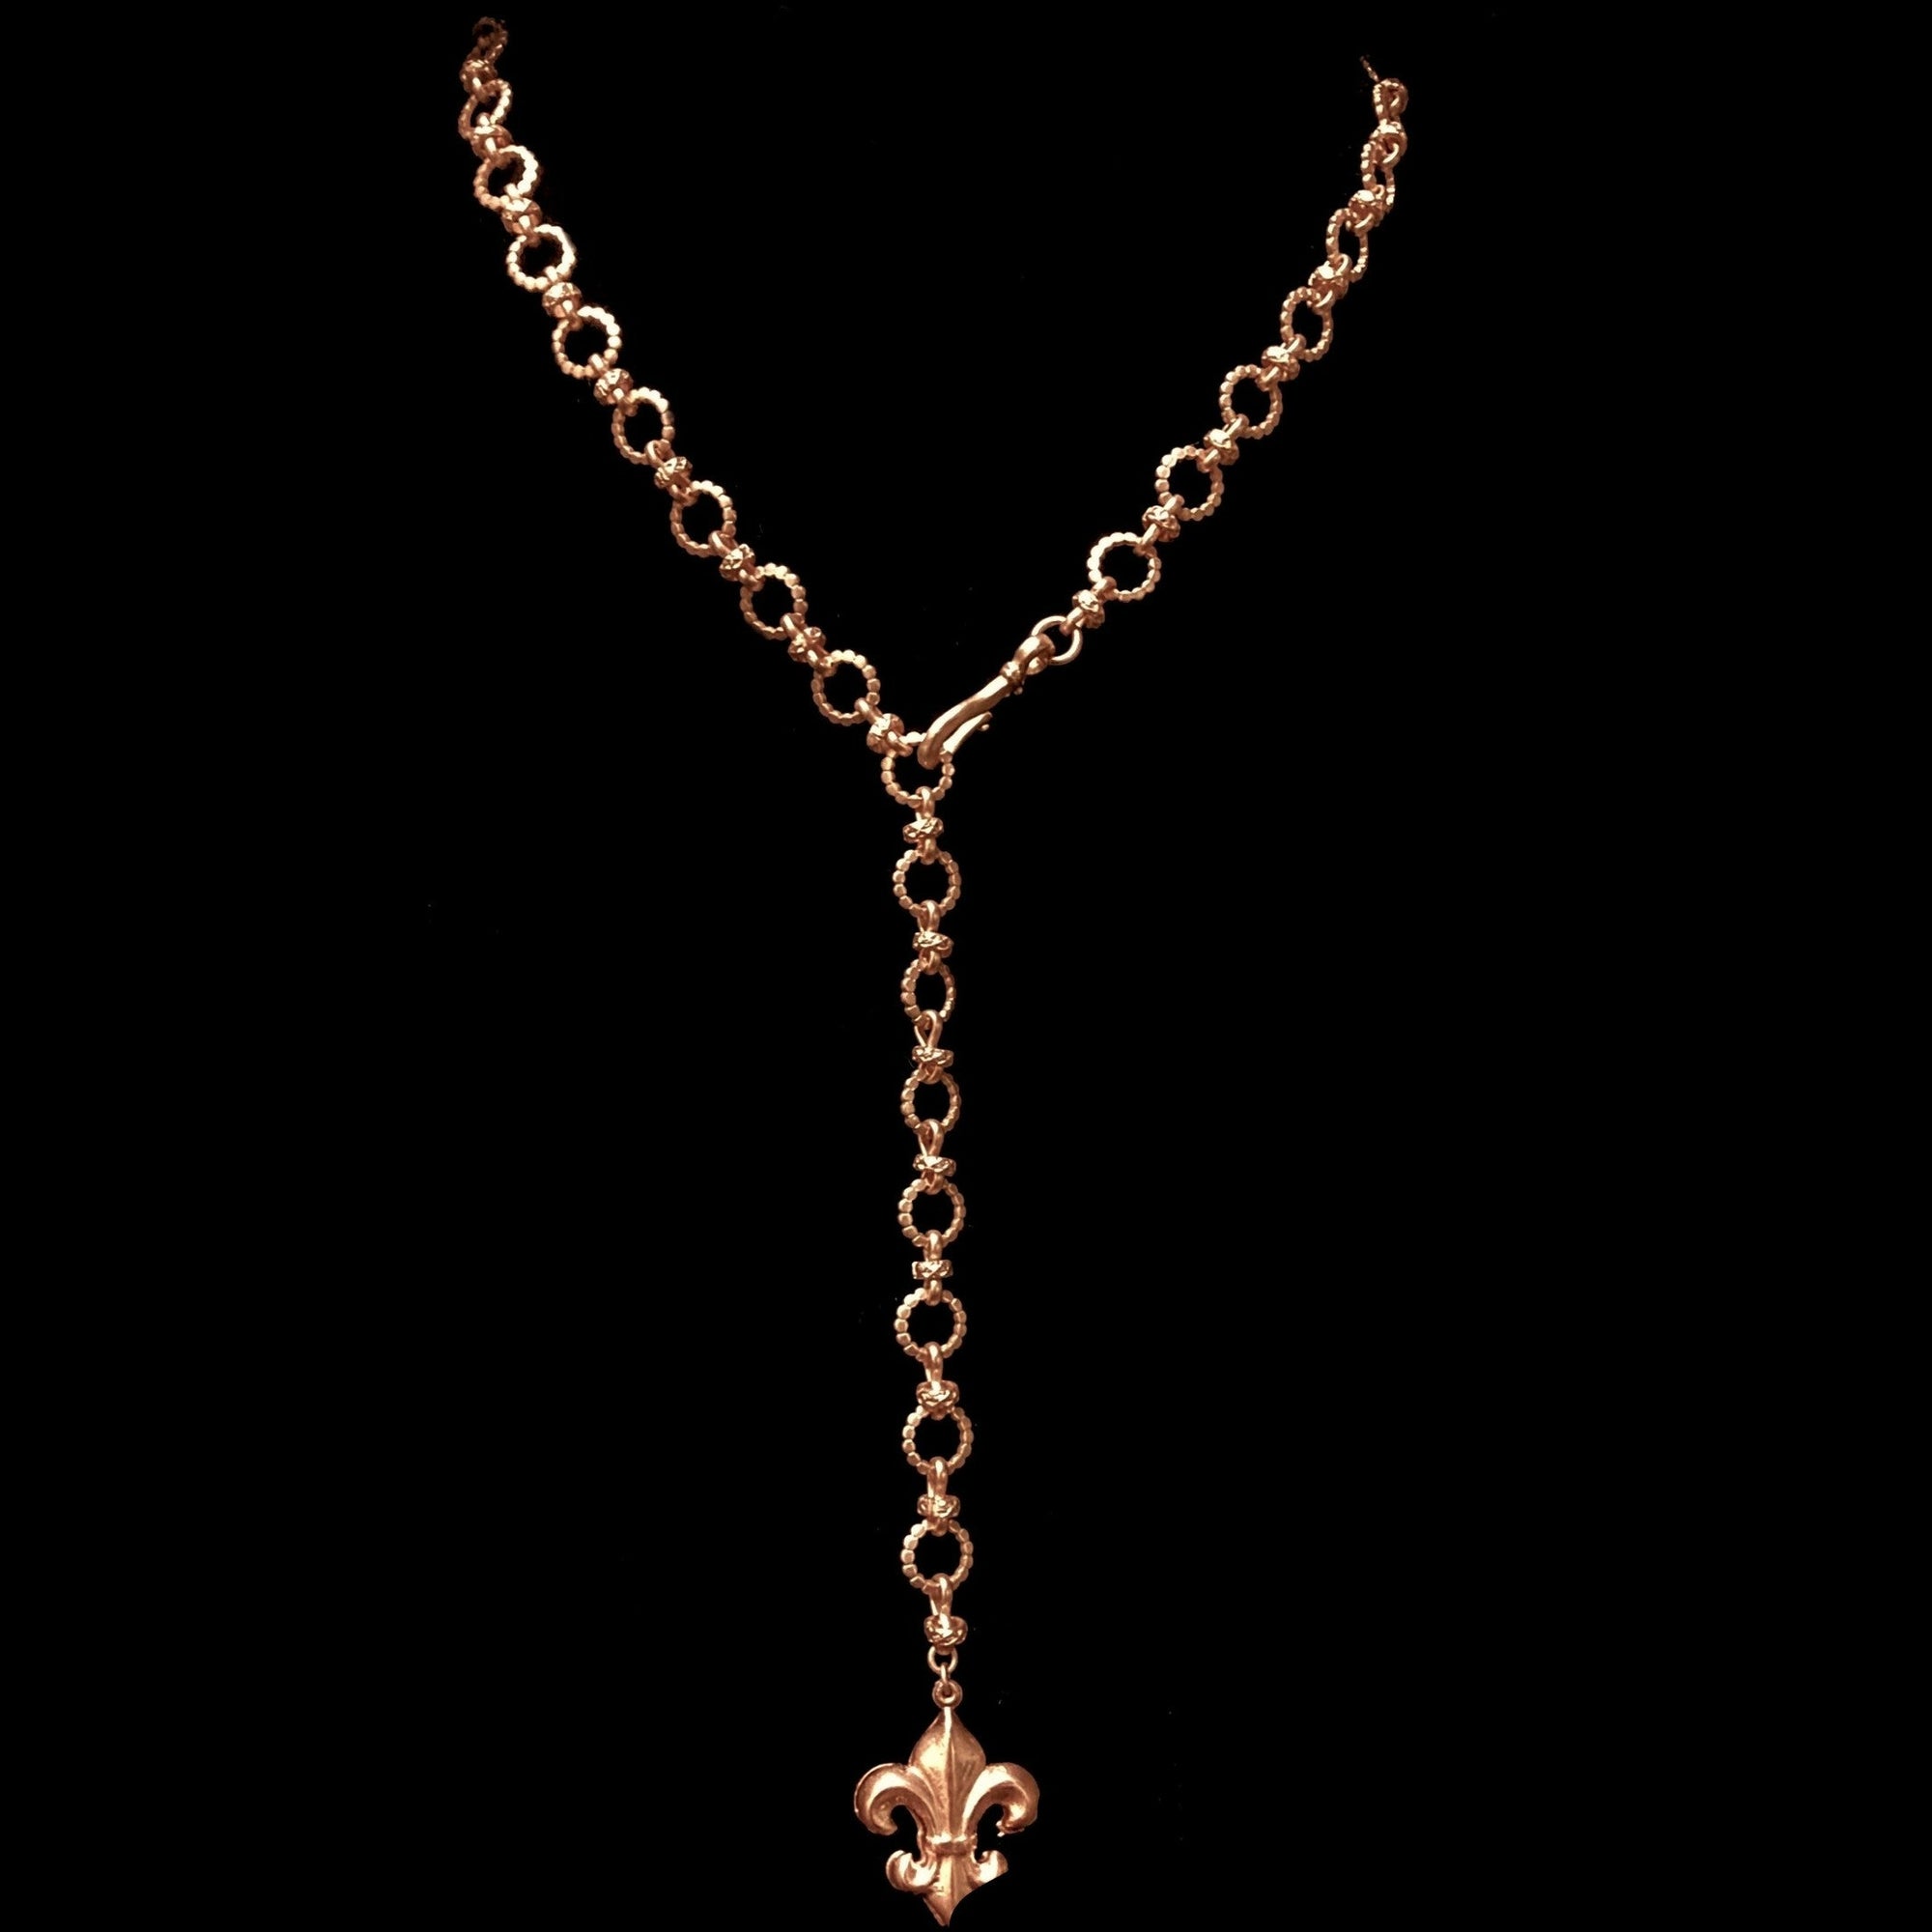 Fleur de Lis Eternity Link Necklace Gold